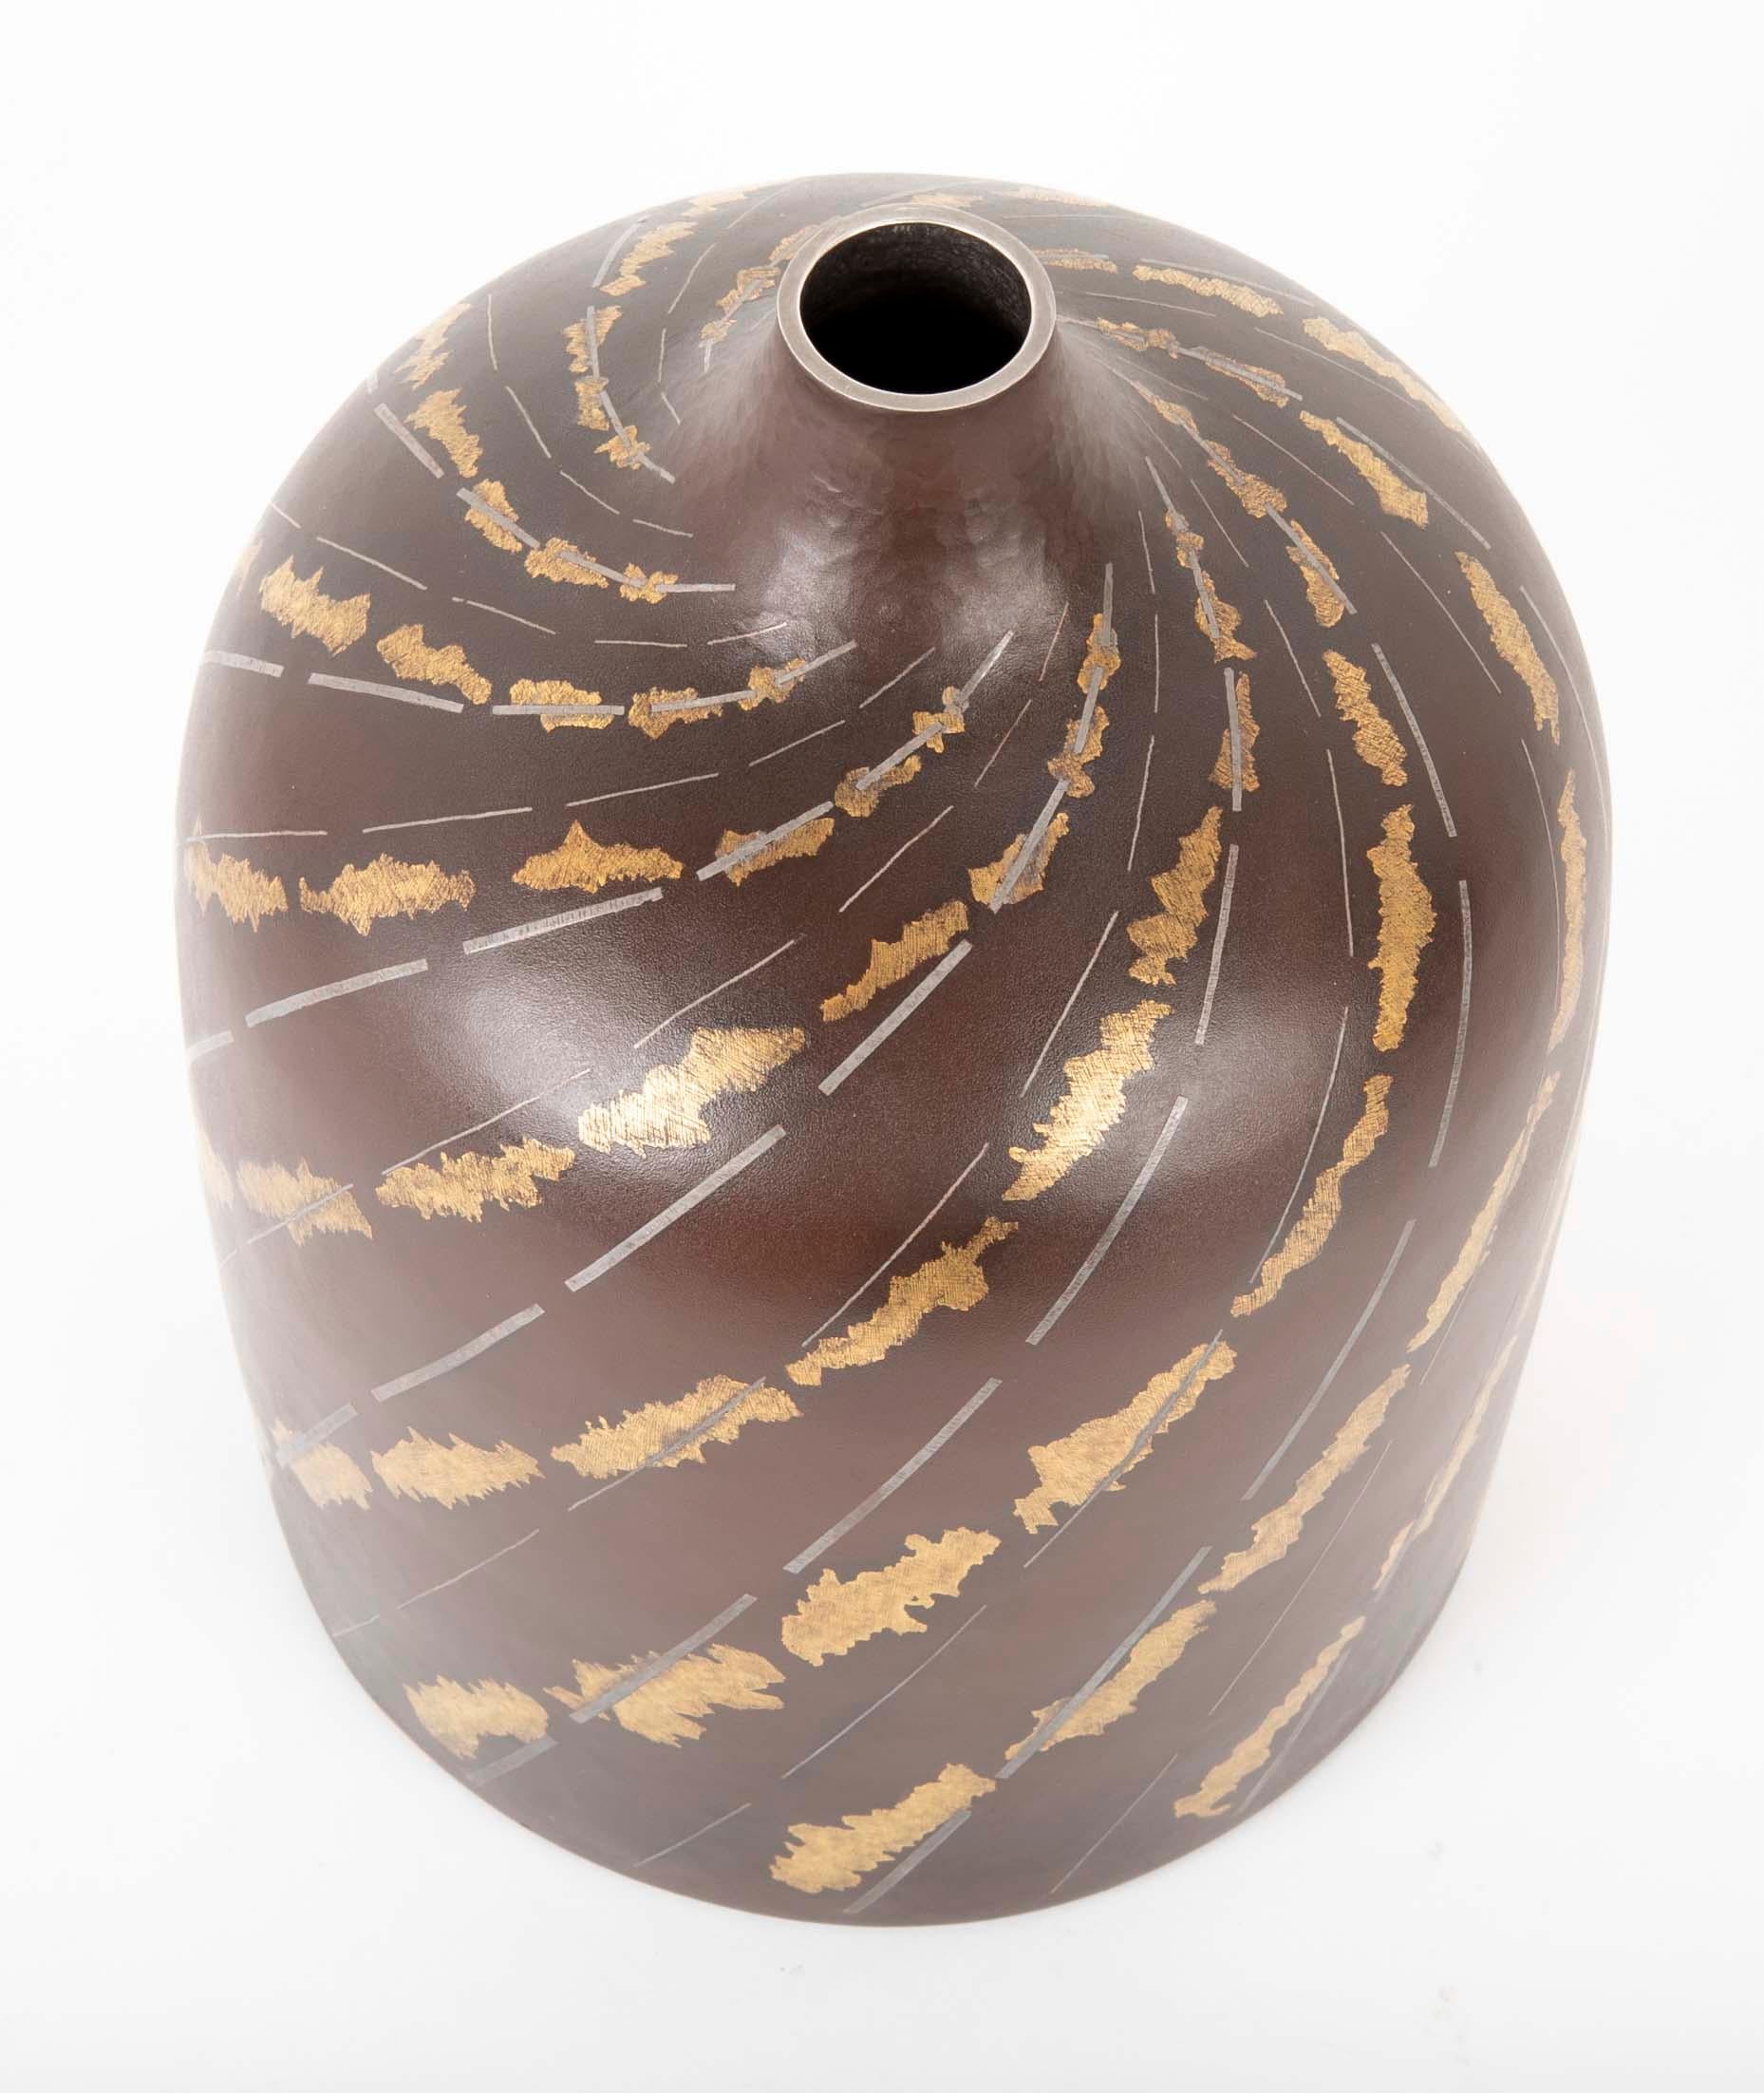 Vase Ikebana cylindrique en fer avec un motif en spirale argenté et doré représentant un ruisseau. Le vase a été réalisé par Ueda Hiroshi et est signé Hiroshi. La boîte est accompagnée de son Tomobako (boîte de rangement) d'origine et porte